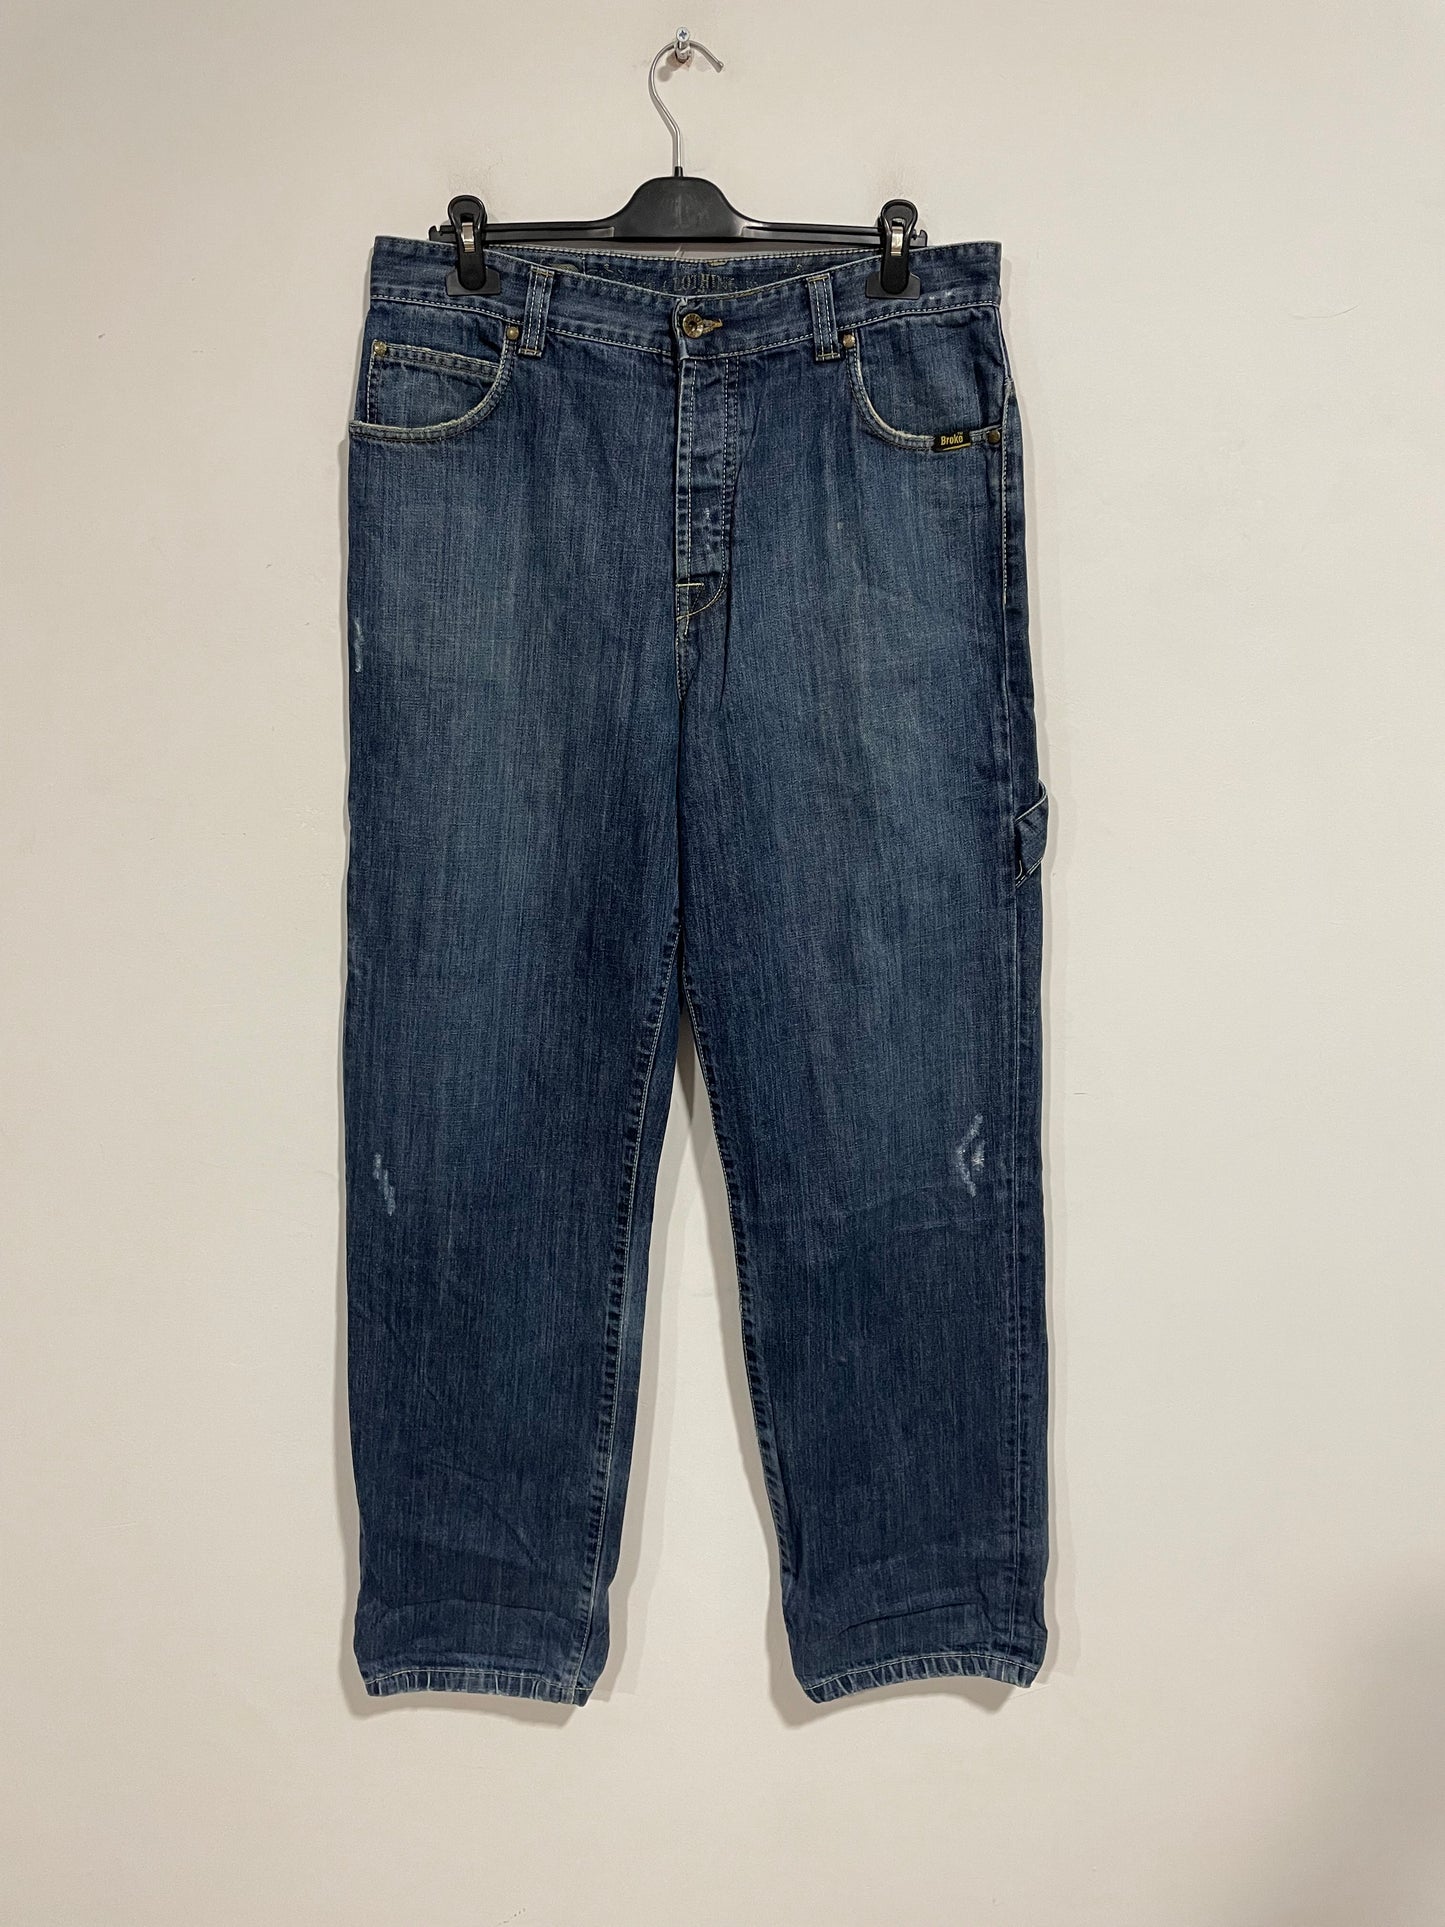 Jeans baggy carpenter Broke clothing vintage (D514)